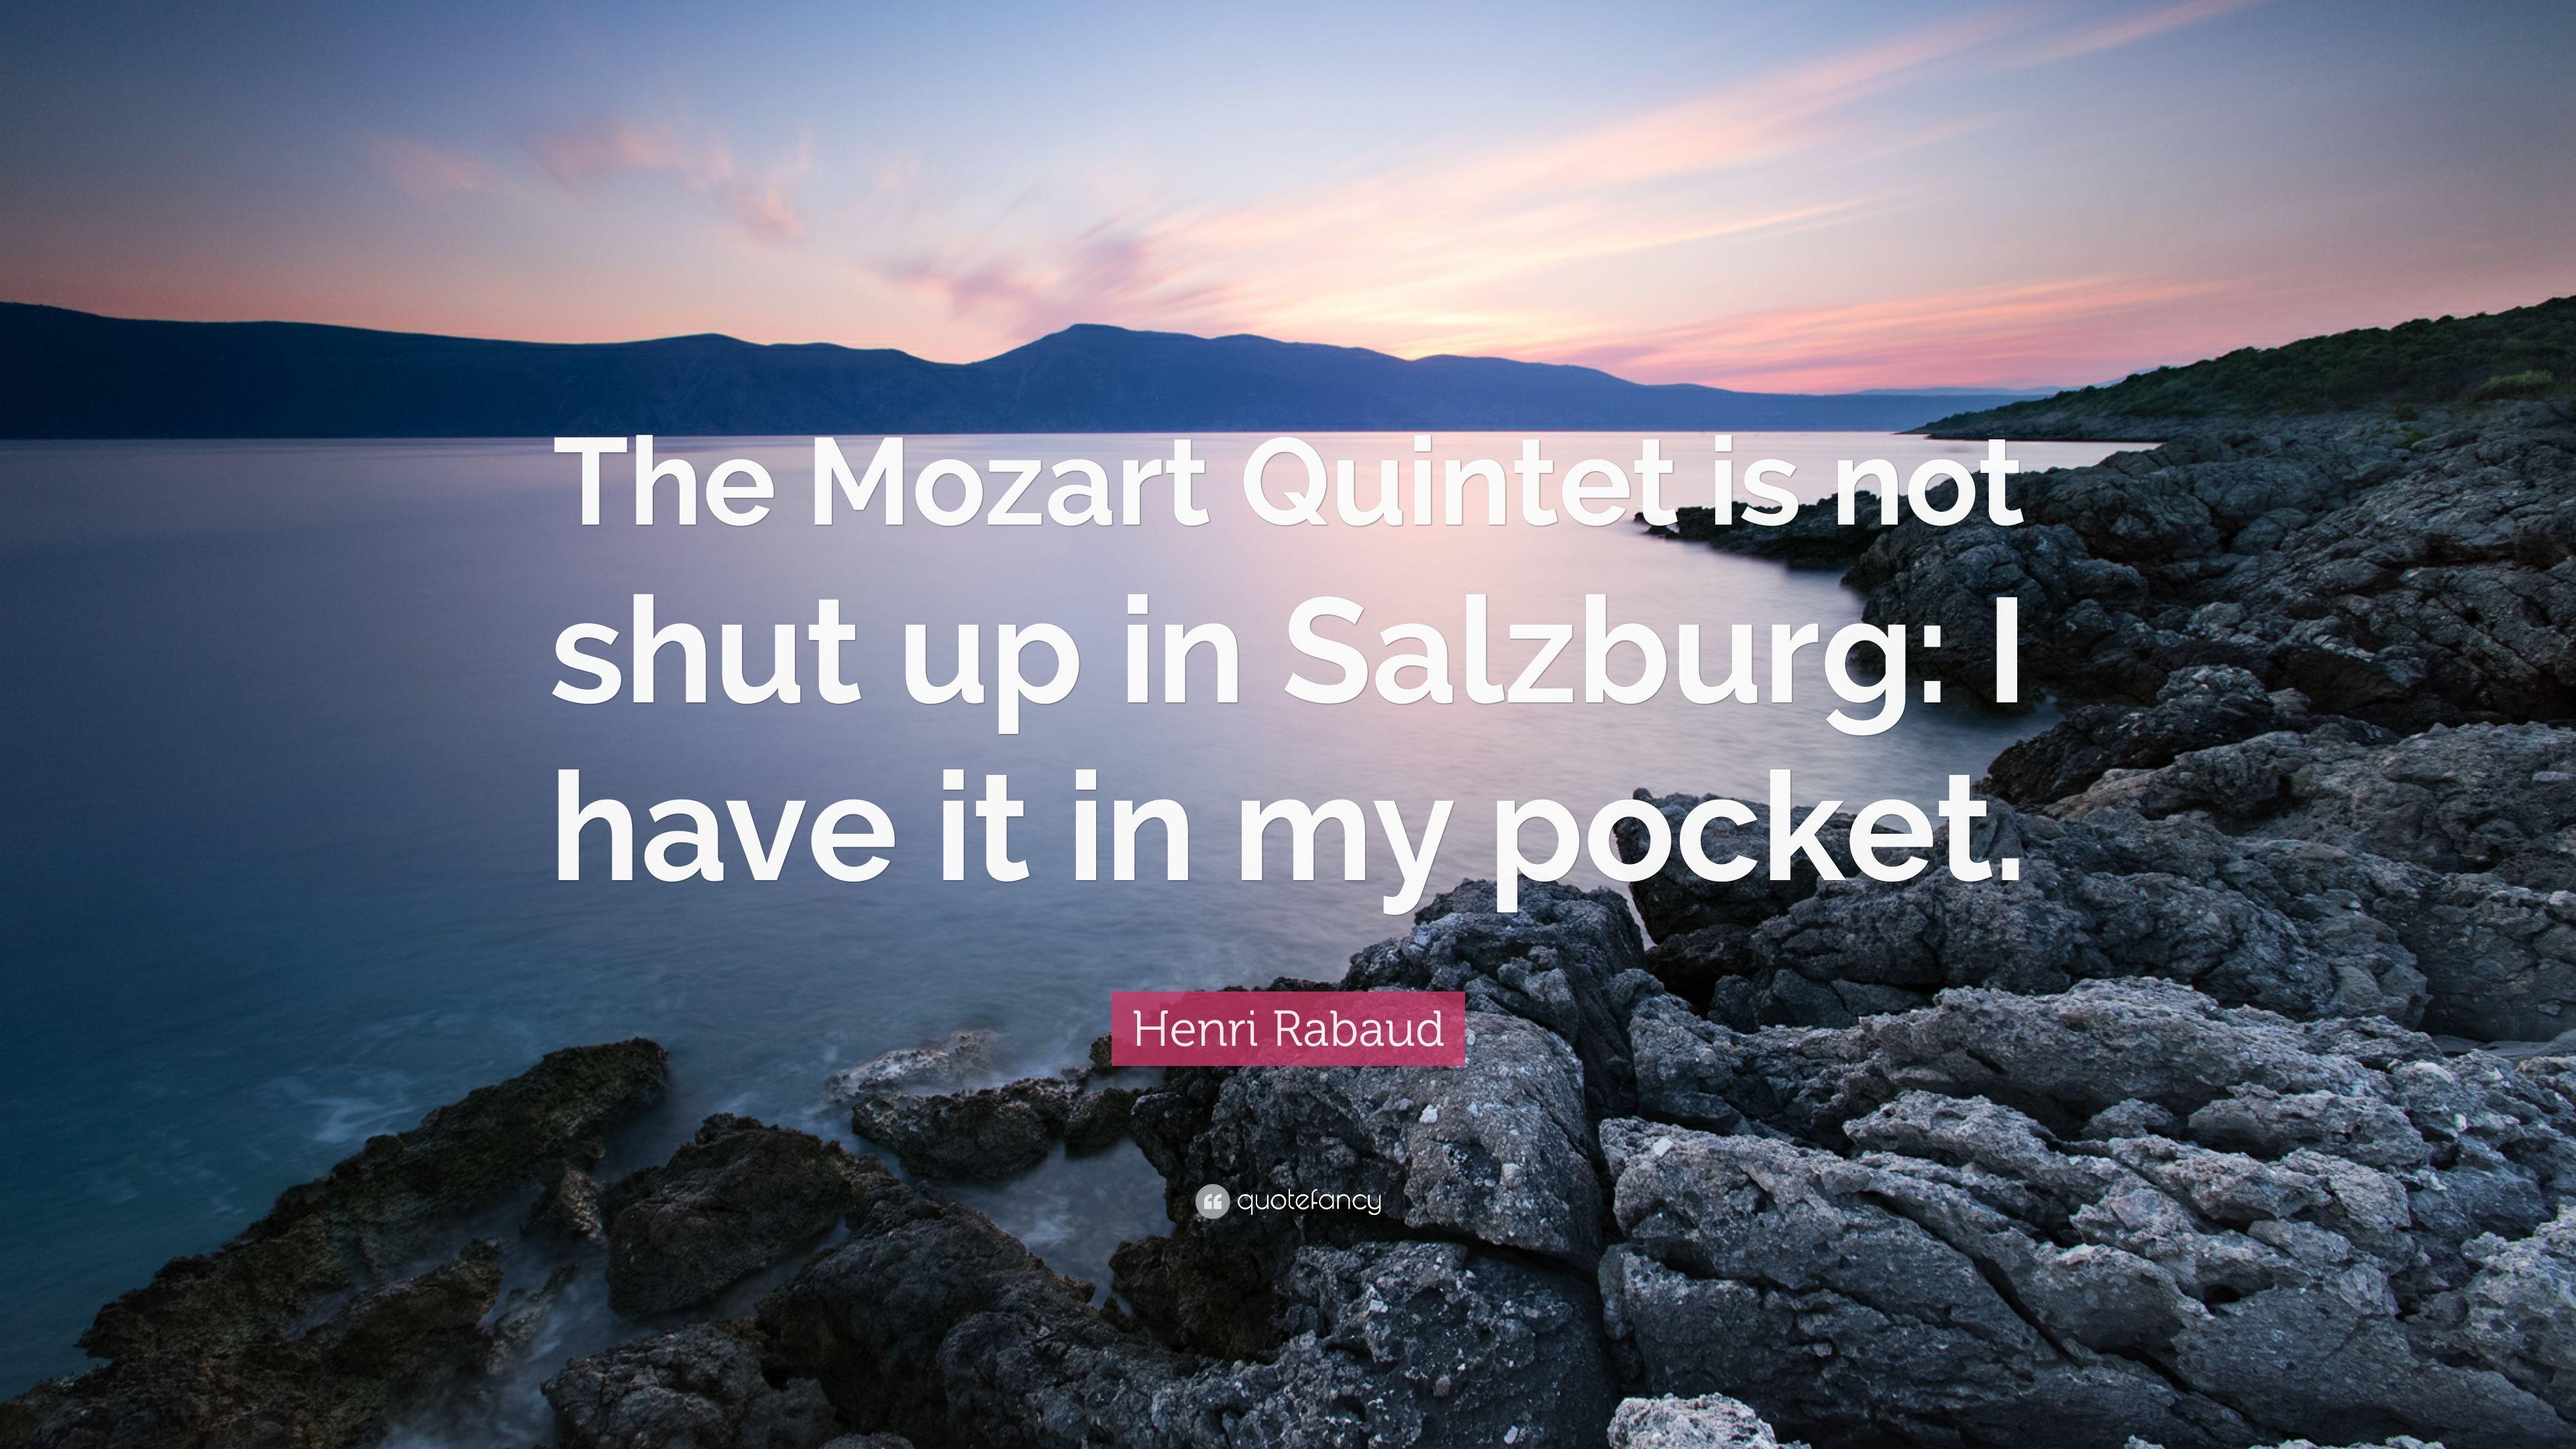 Henri Rabaud Quote: “The Mozart Quintet is not shut up in Salzburg